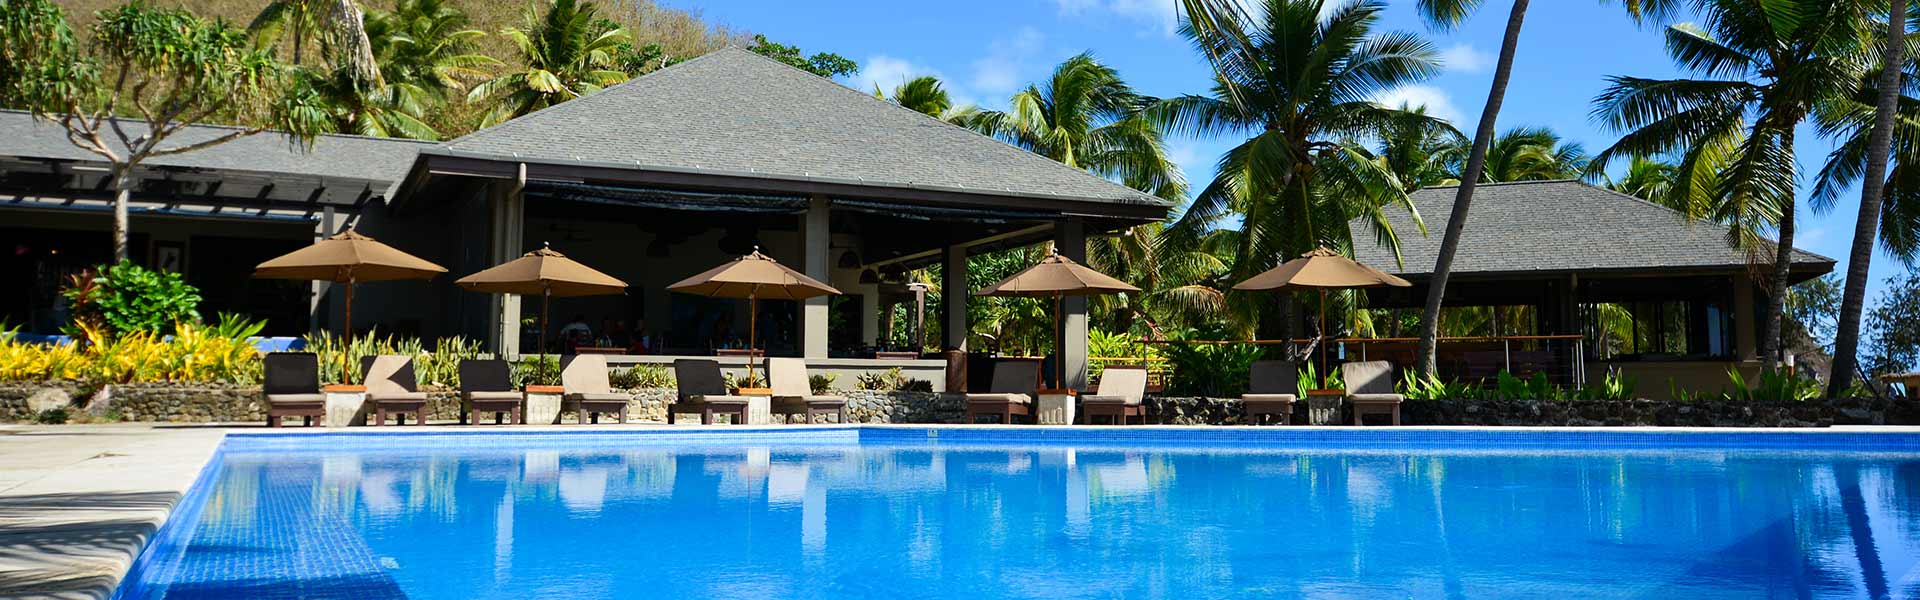 5-star Adults-Only Fiji Holiday – 6 Nights at Yasawa Island Resort